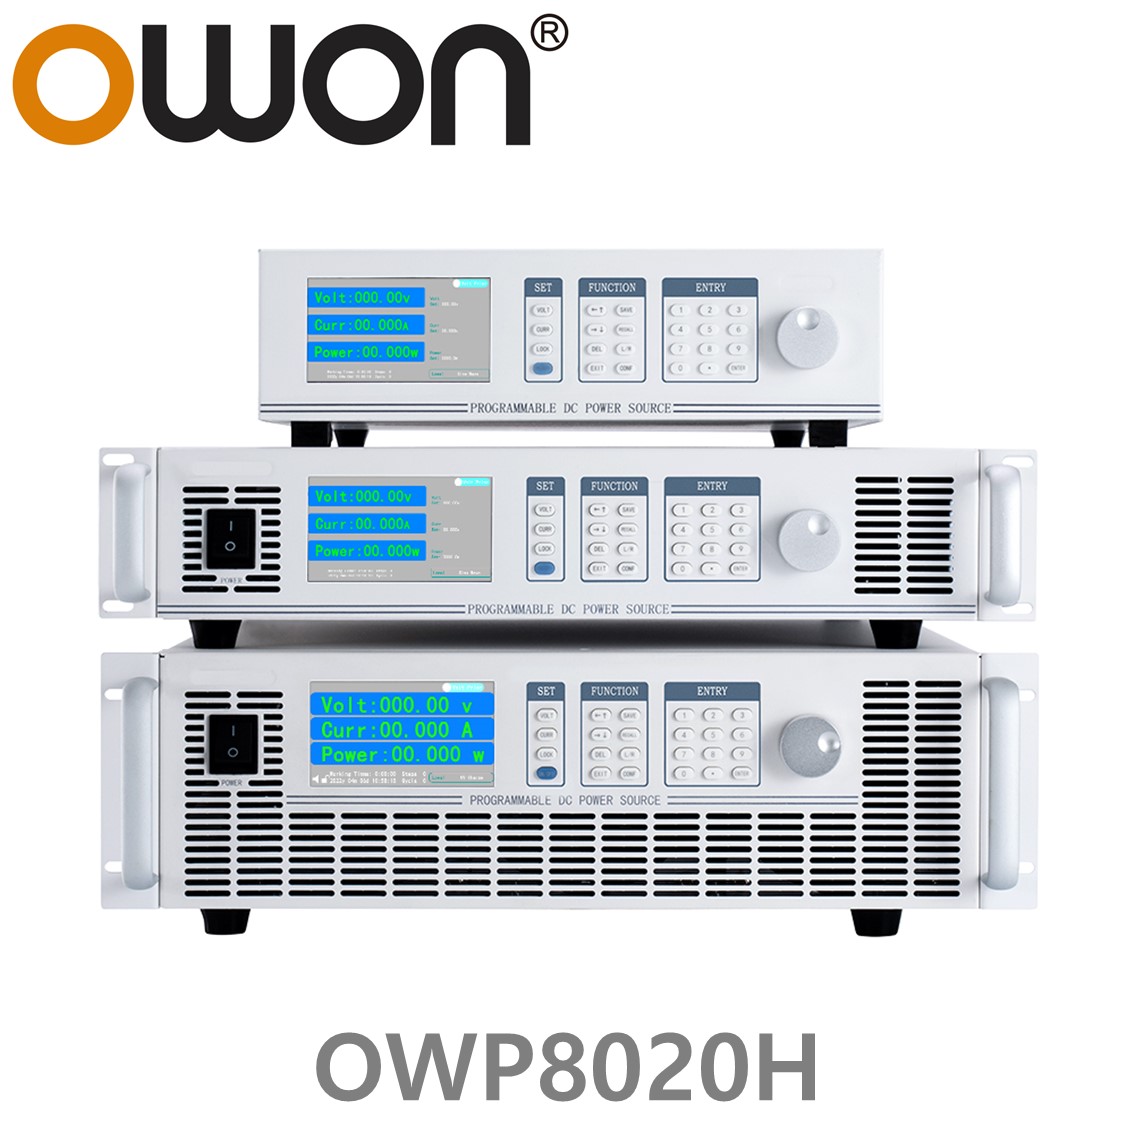 [ OWON ] OWP8020H 고전력 DC파워서플라이, 0-200.00V / 0-50.000A / 8000.0W DC전원공급장치